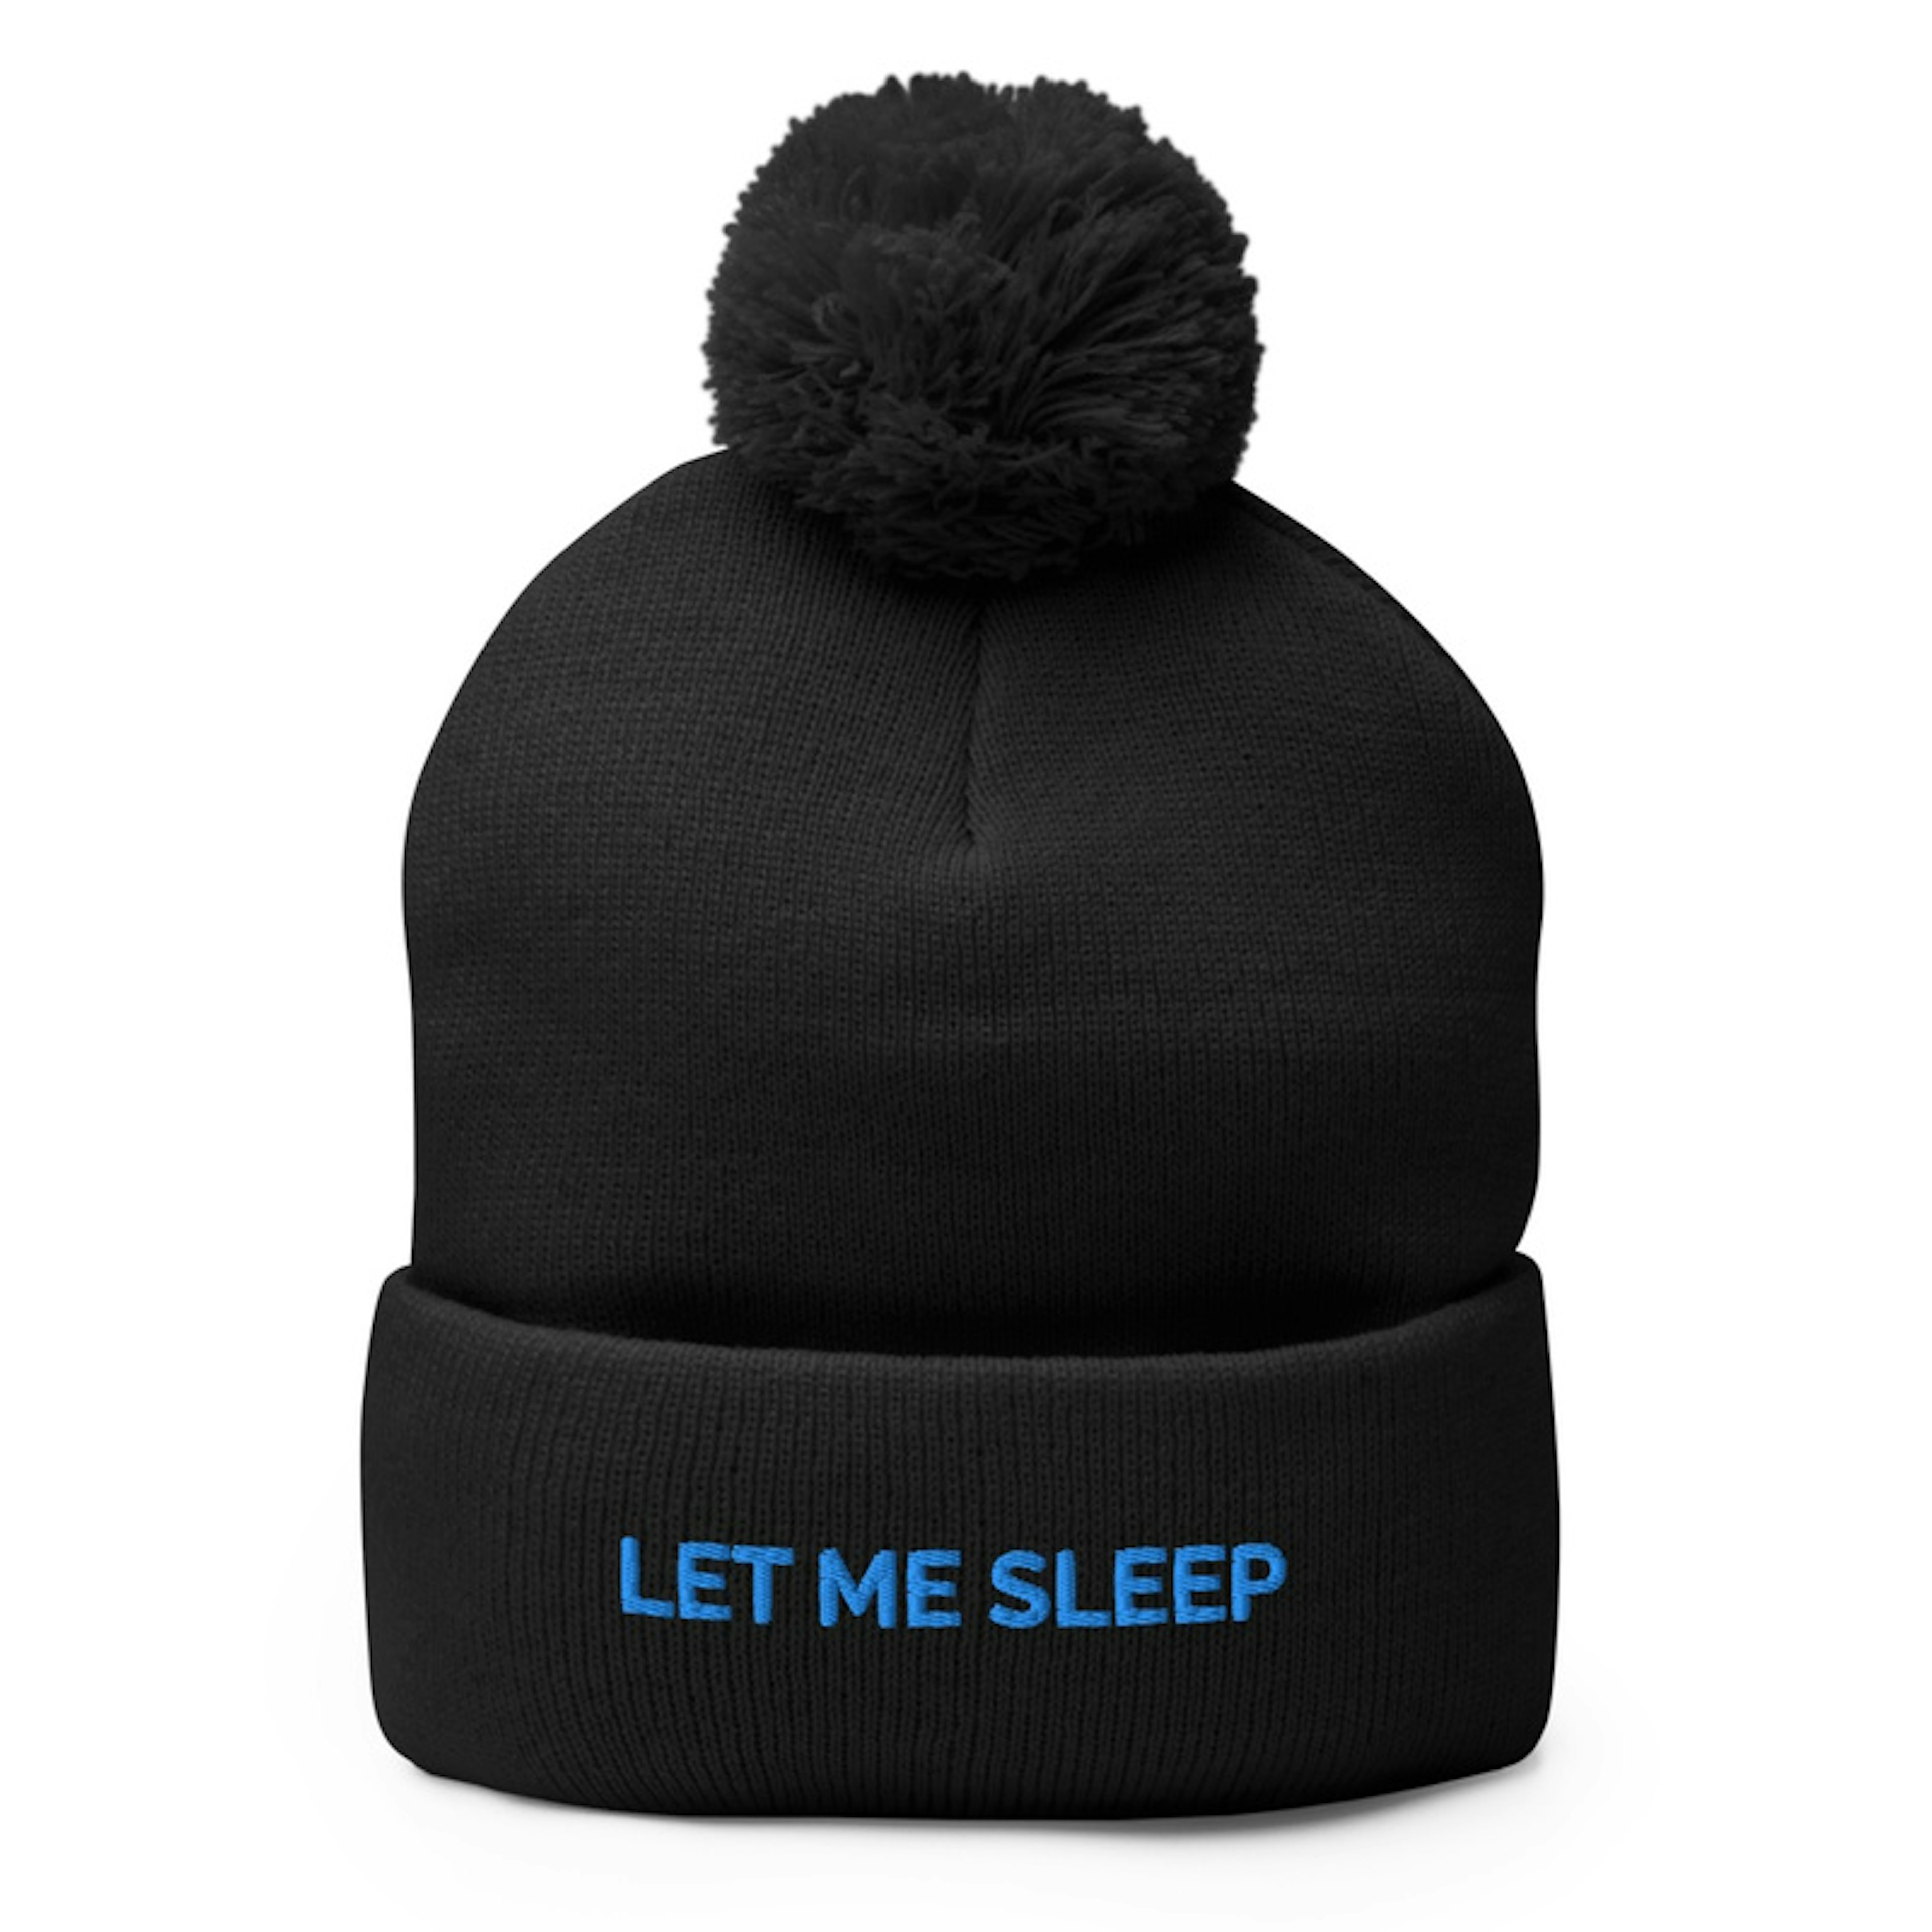 Let me sleep hat